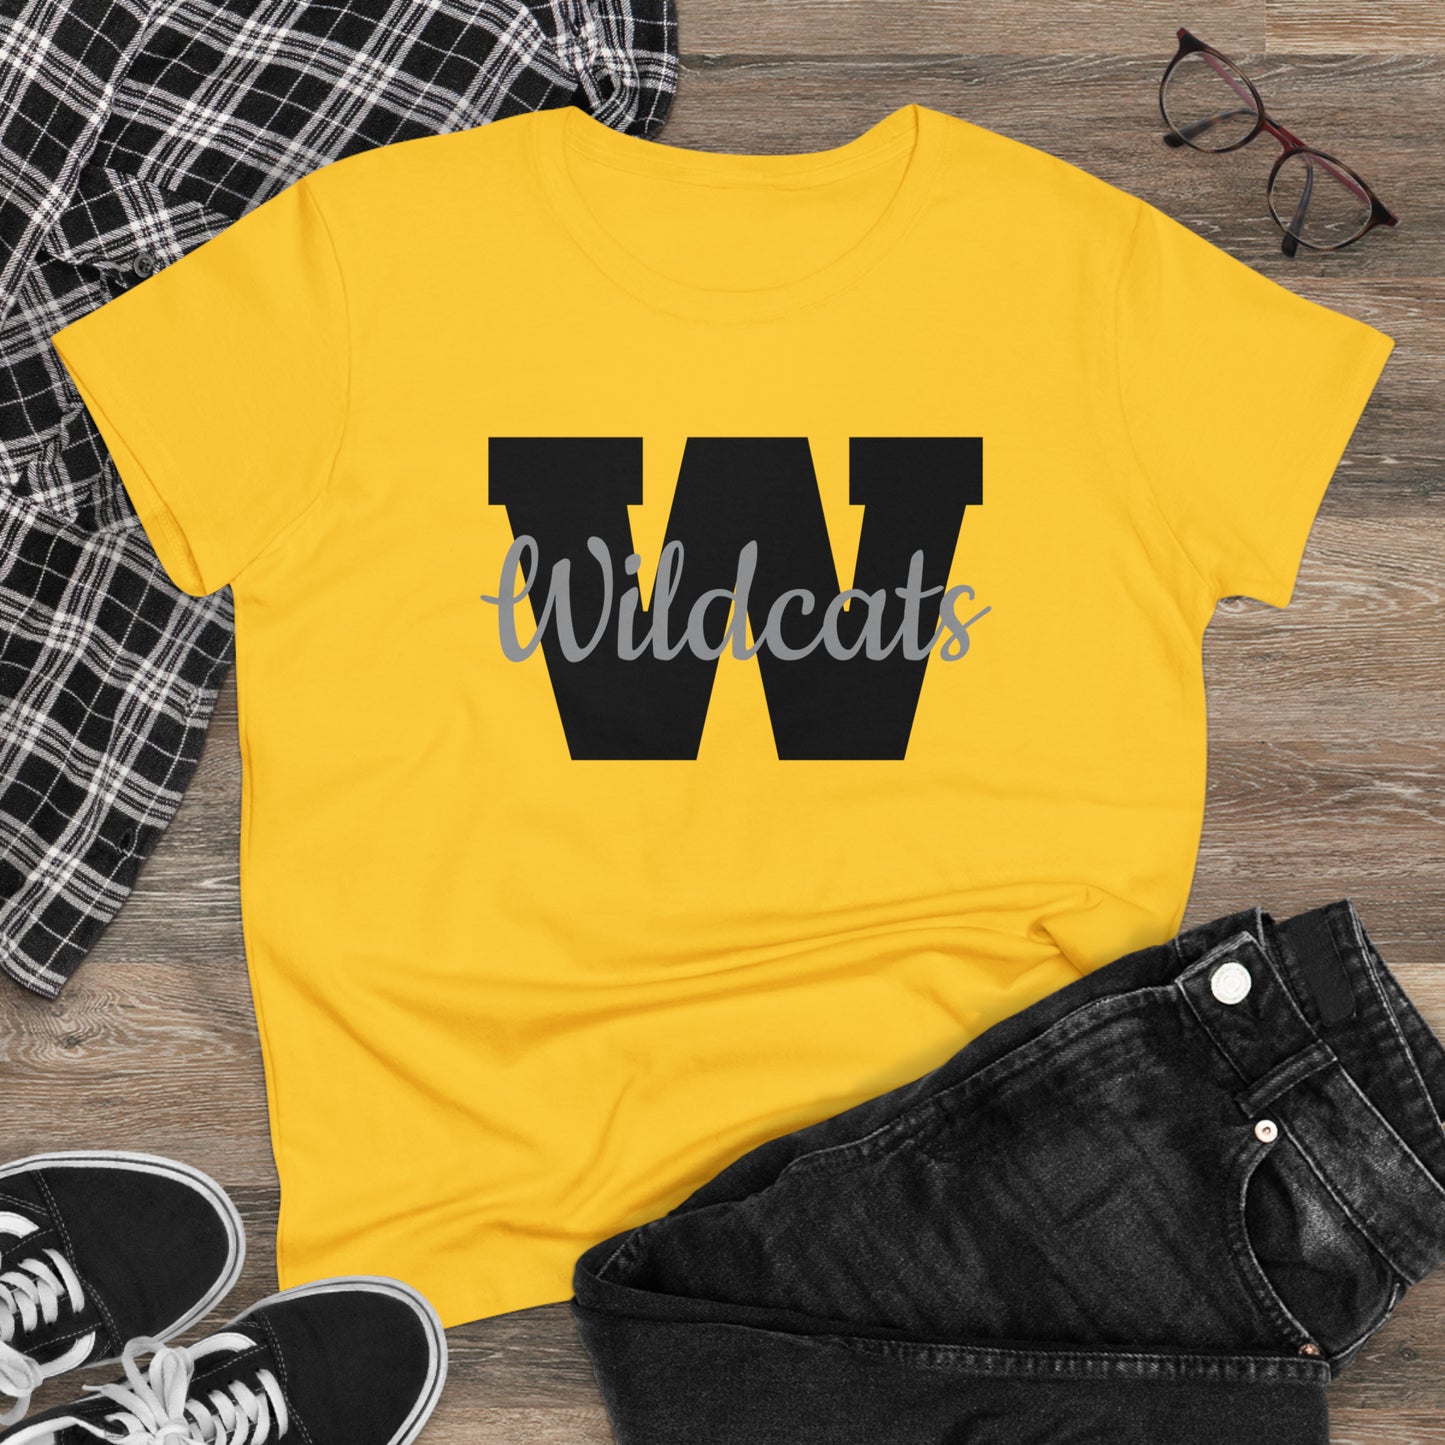 School Spirit (Valdosta High School "W"/ Women's Midweight Cotton Tee)